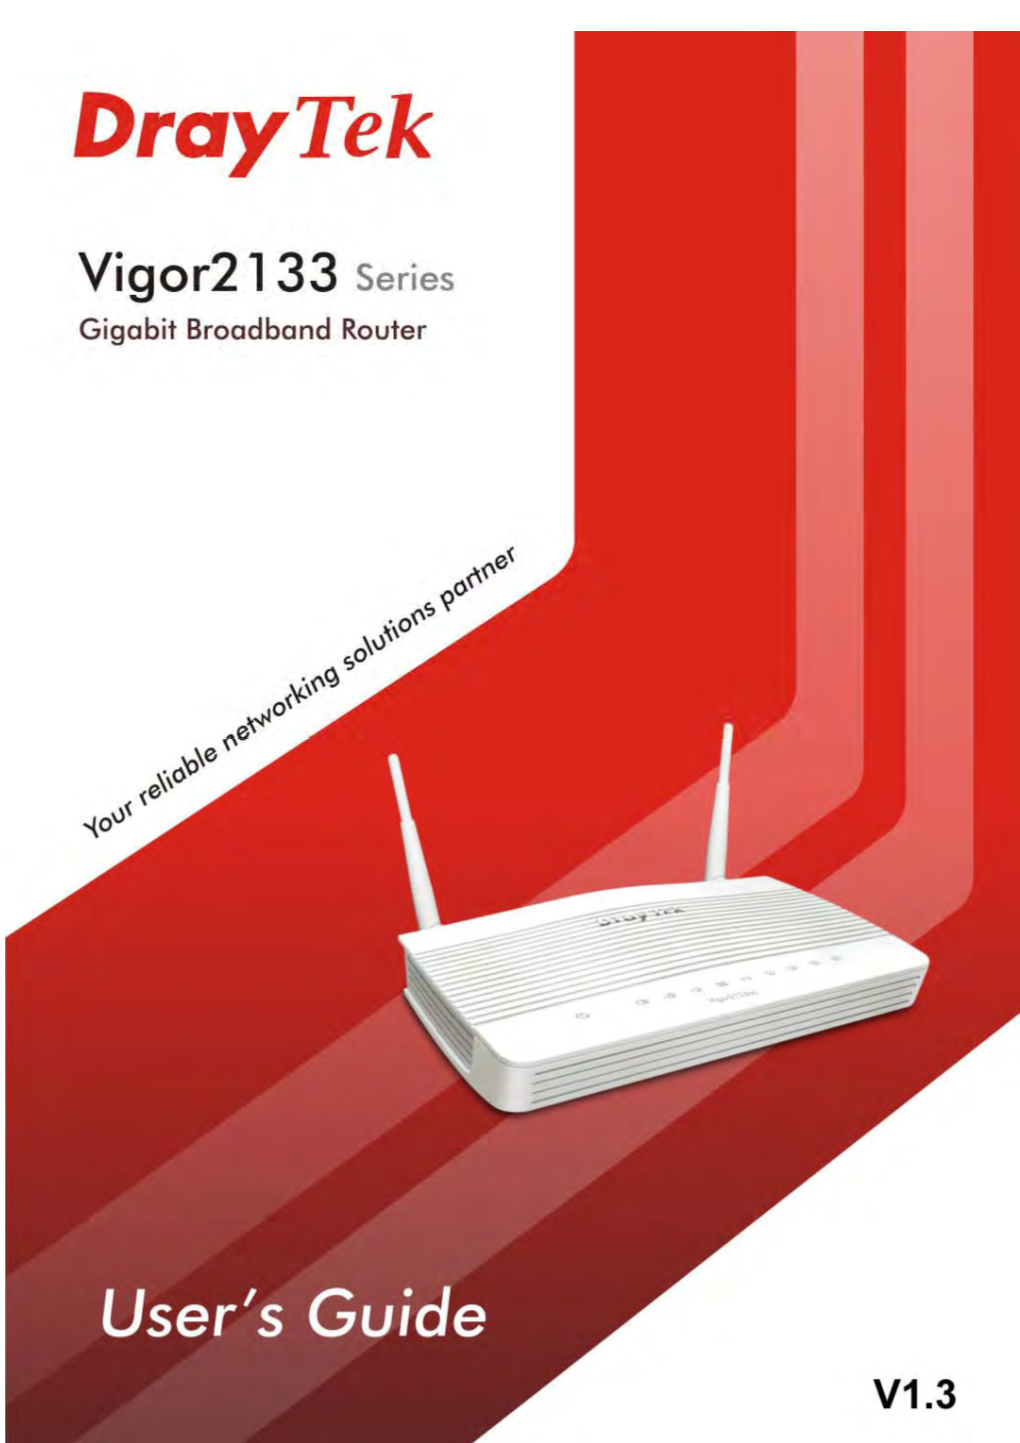 Vigor2133 Series Gigabit Broadband Router User's Guide